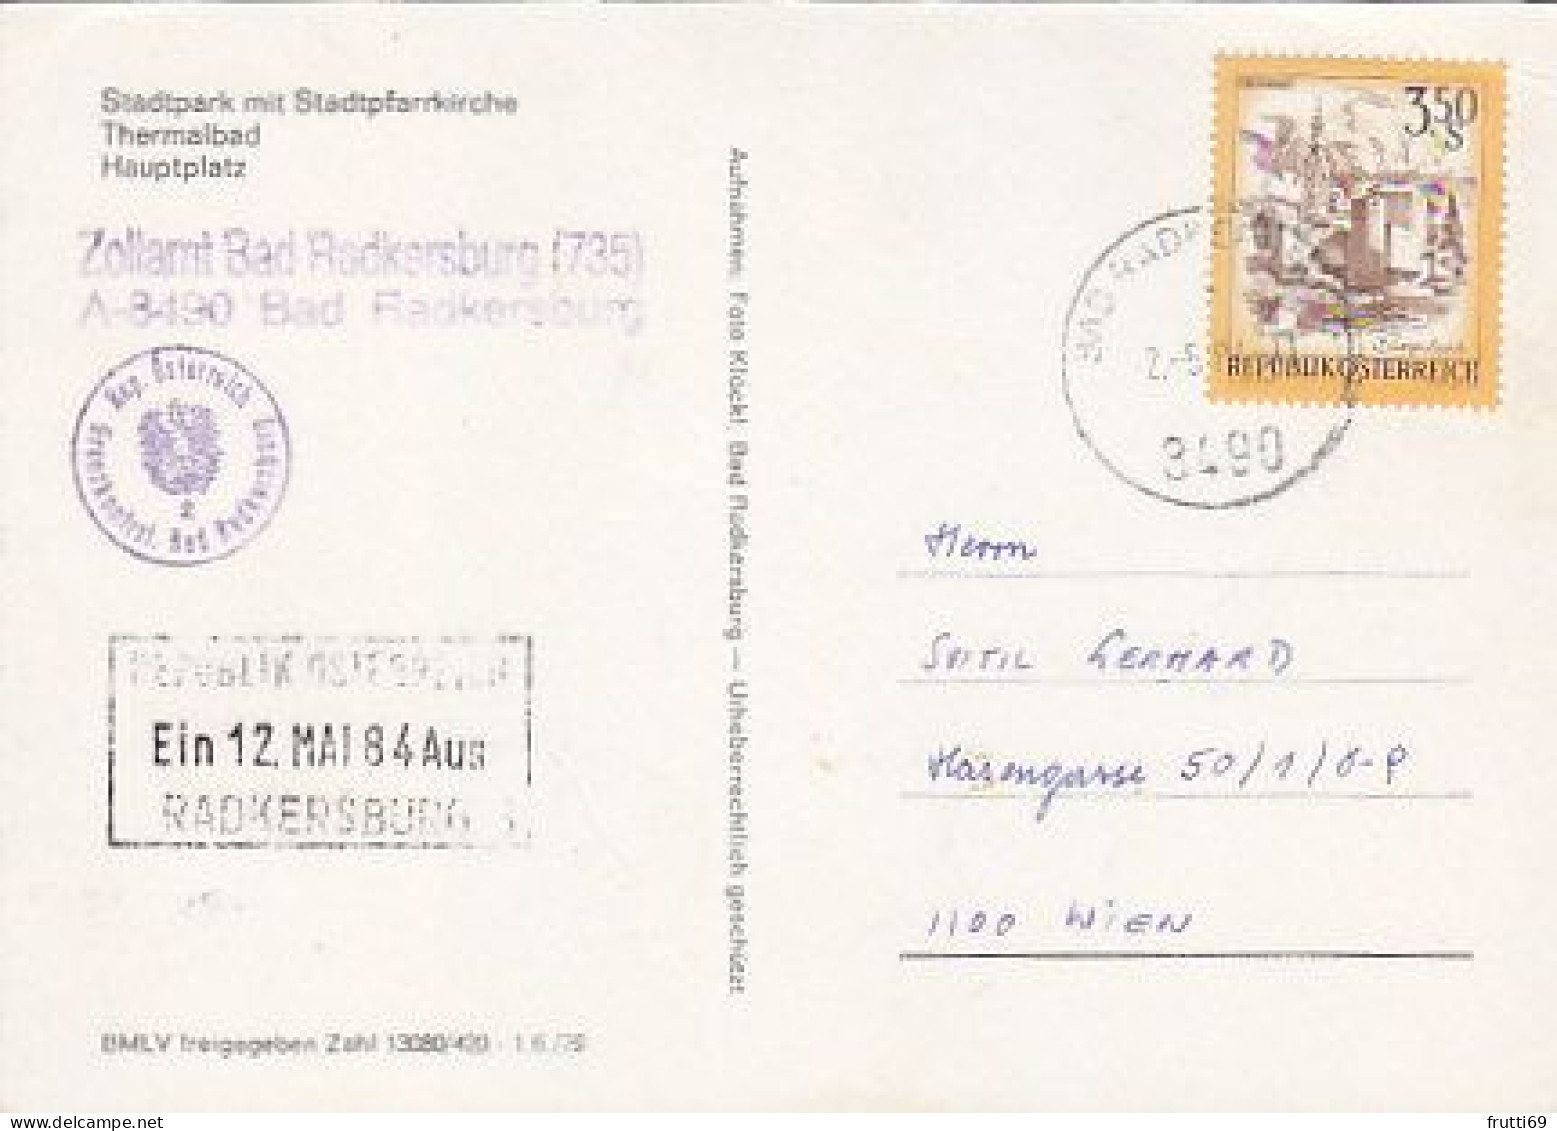 AK 193073 AUSTRIA - Bad Radkersburg - Bad Radkersburg